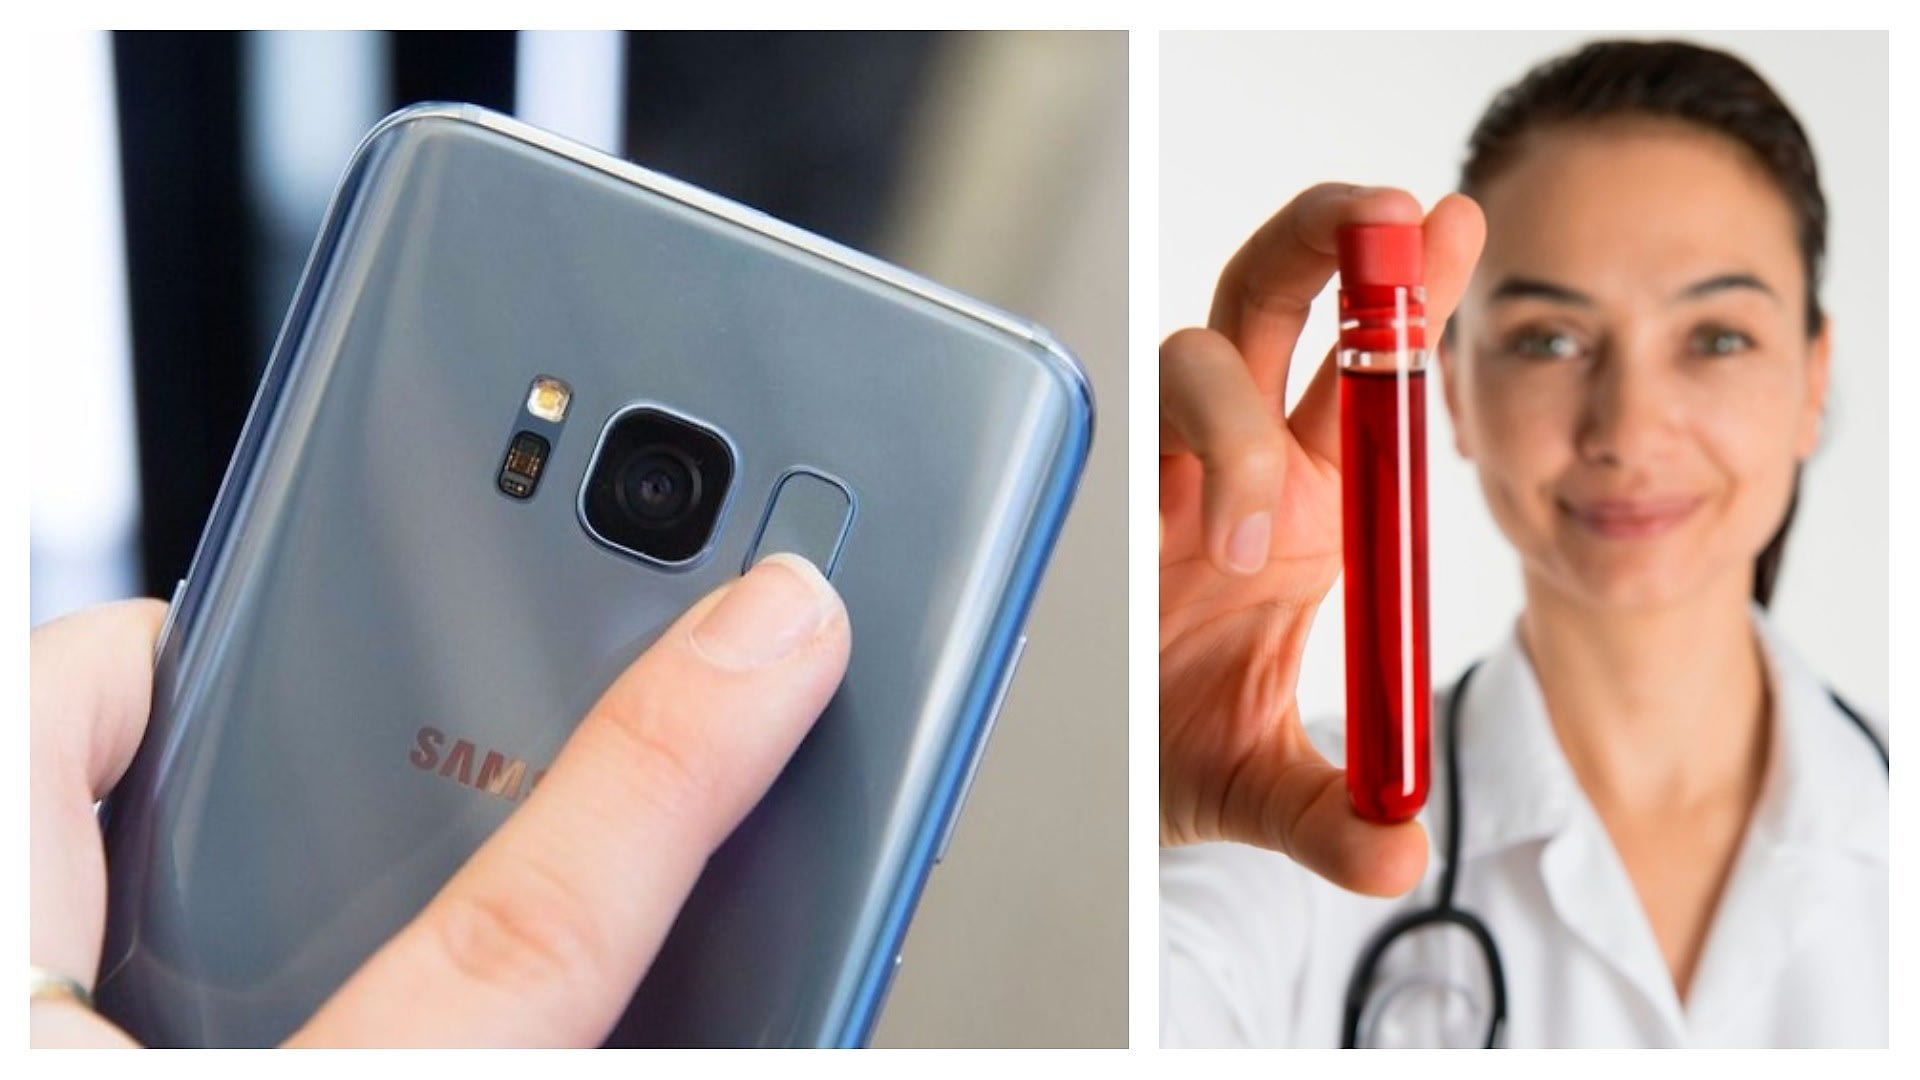 Samsung chystá nový způsob odemykání svých zařízení pomocí toku krve